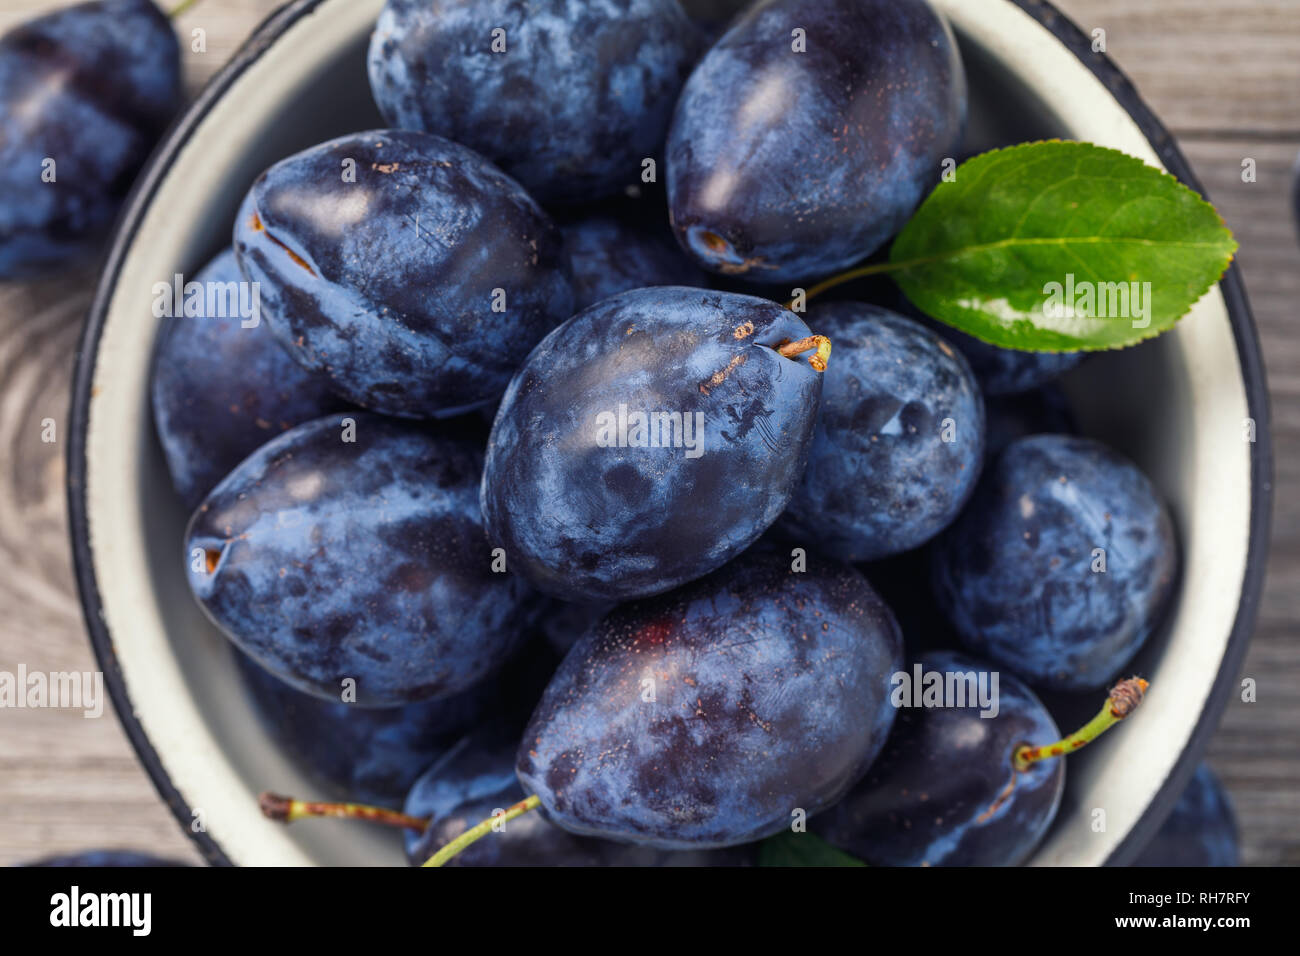 Vue de dessus d'un bol rempli de fruits pruneaux mûrs sur une table en bois, close-up Banque D'Images